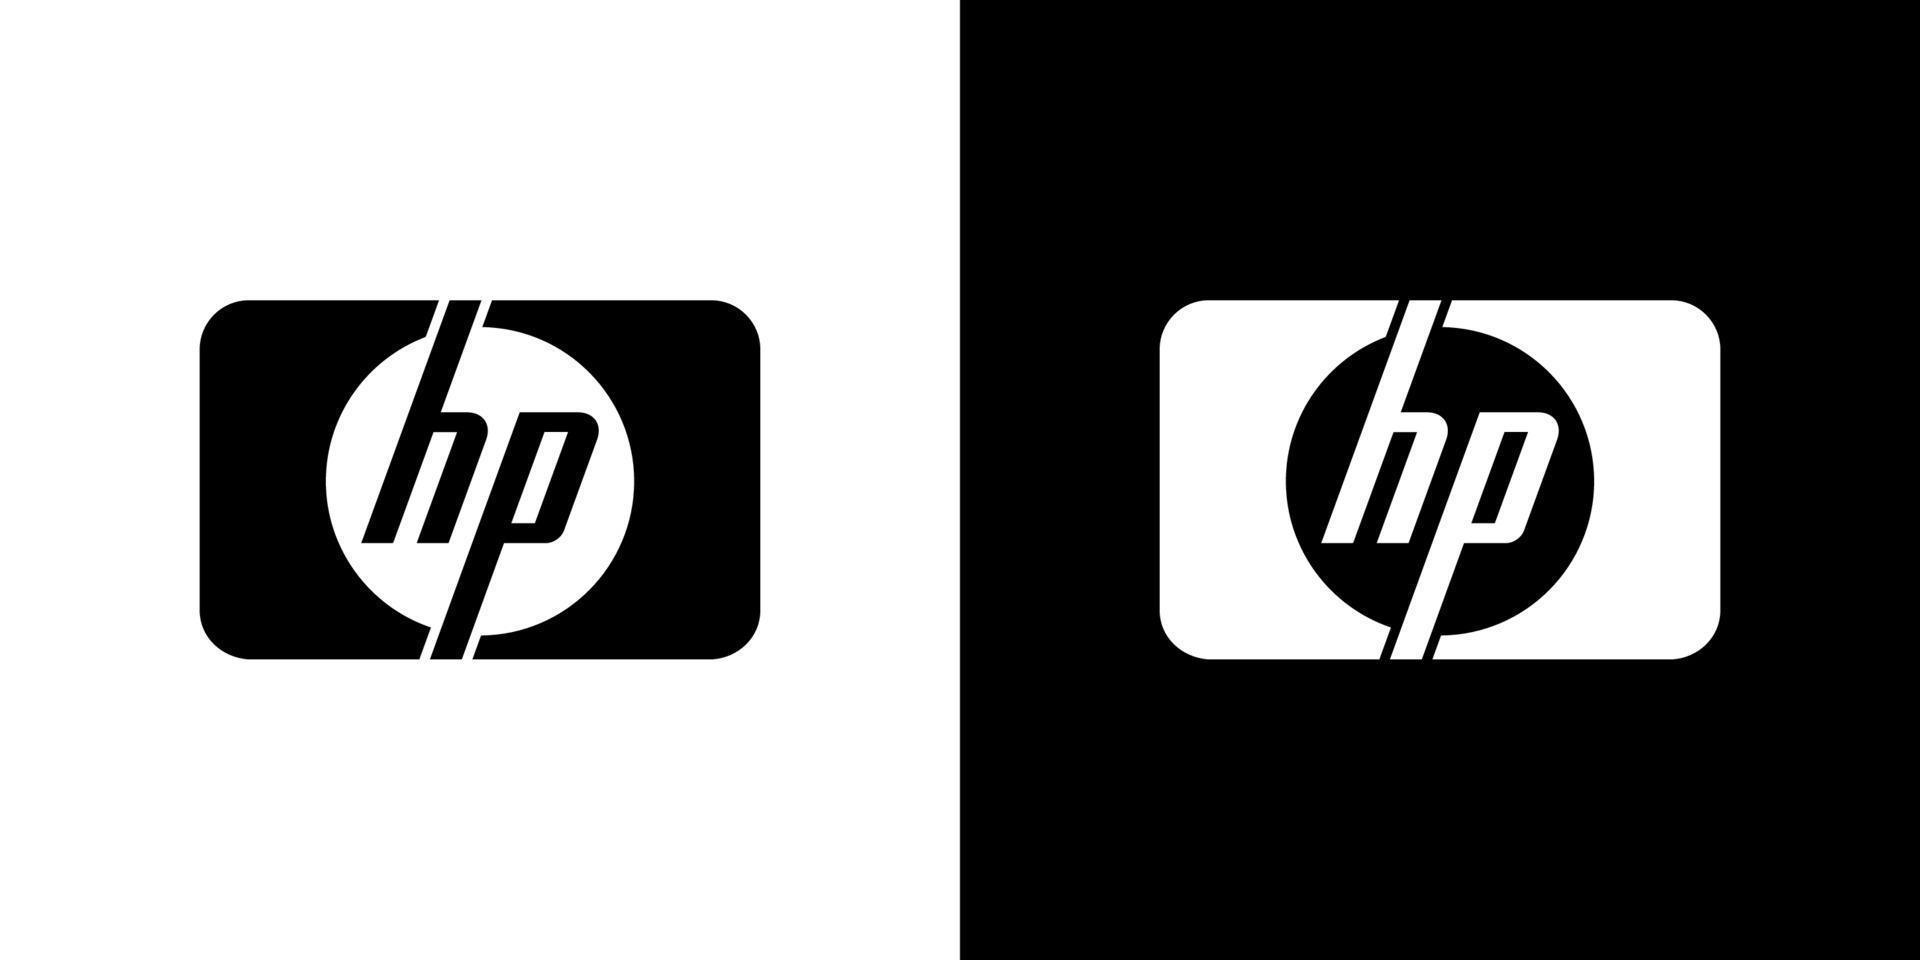 hp logo vecteur, hp icône gratuit vecteur